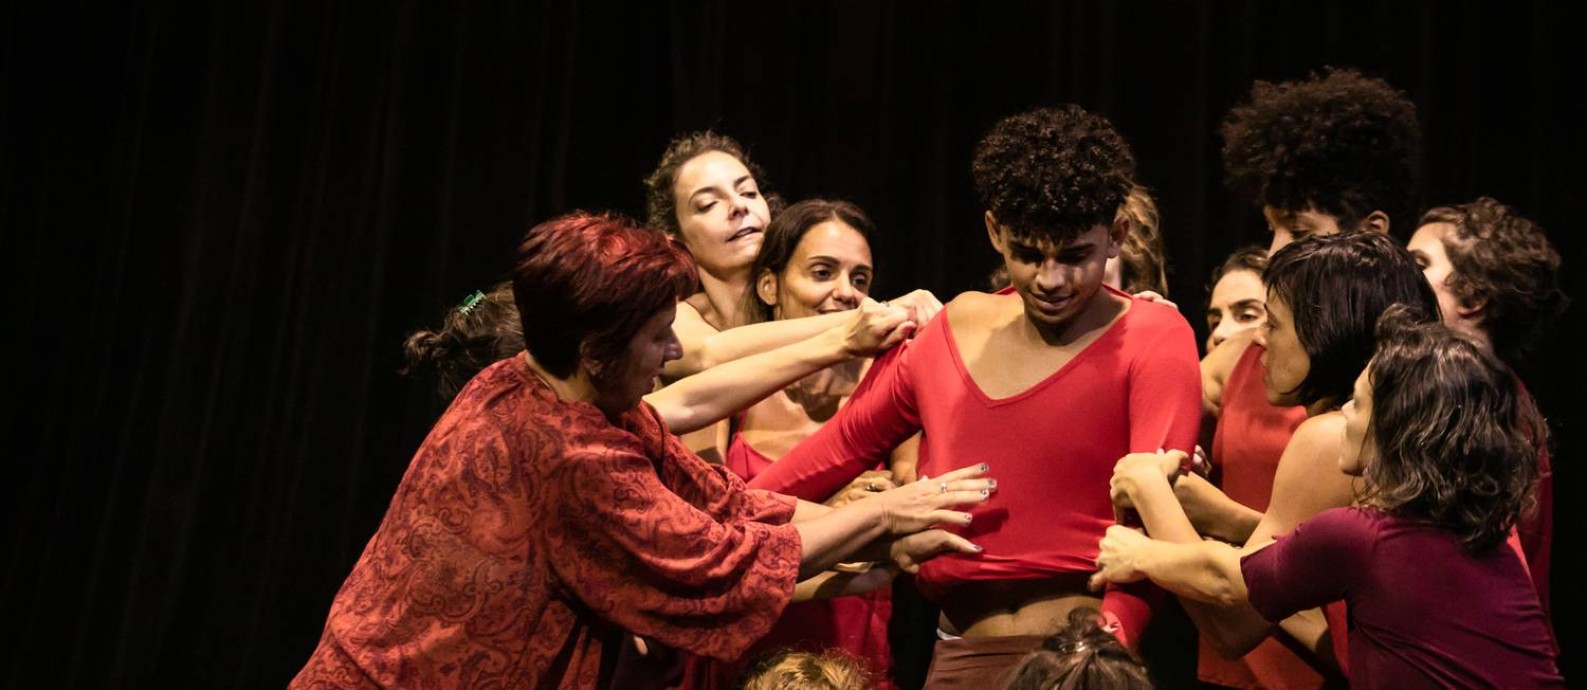 Cena de "As histórias que contamos sobre nós", espetáculo da Esther Weitzman Companhia de Dança Foto: Renato Mangolin / Divulgação